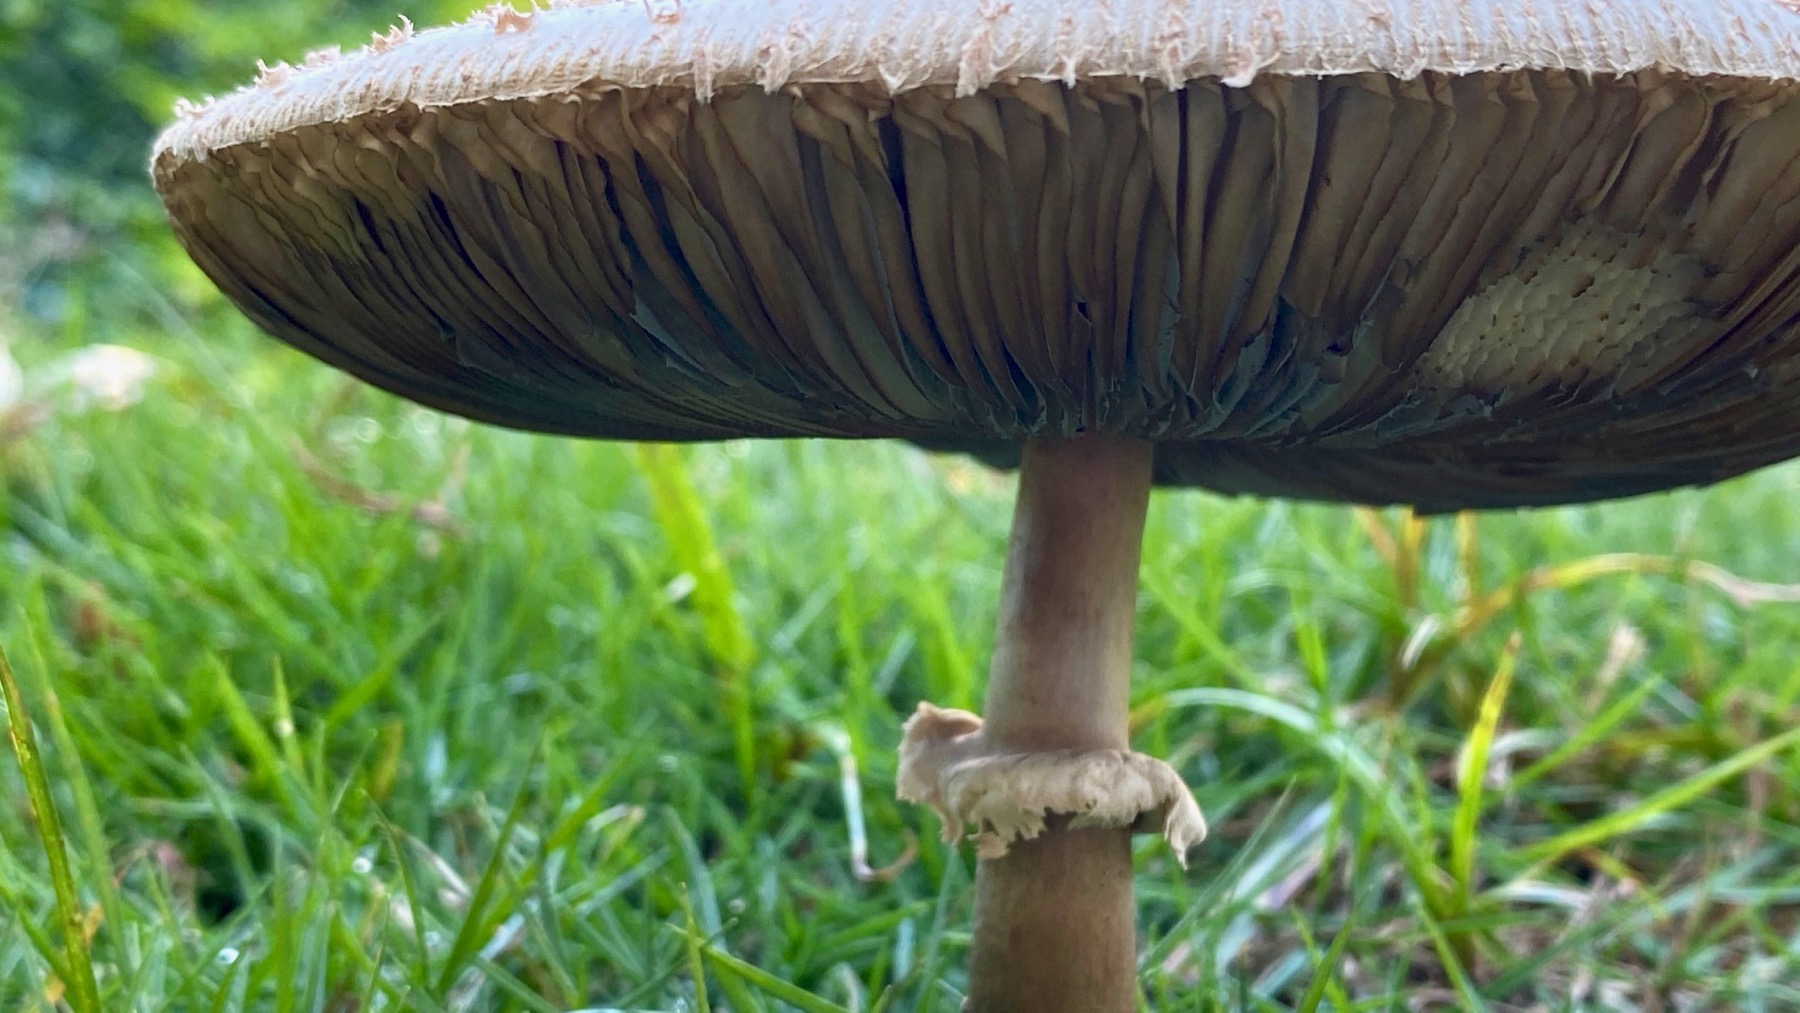 Mushroom under